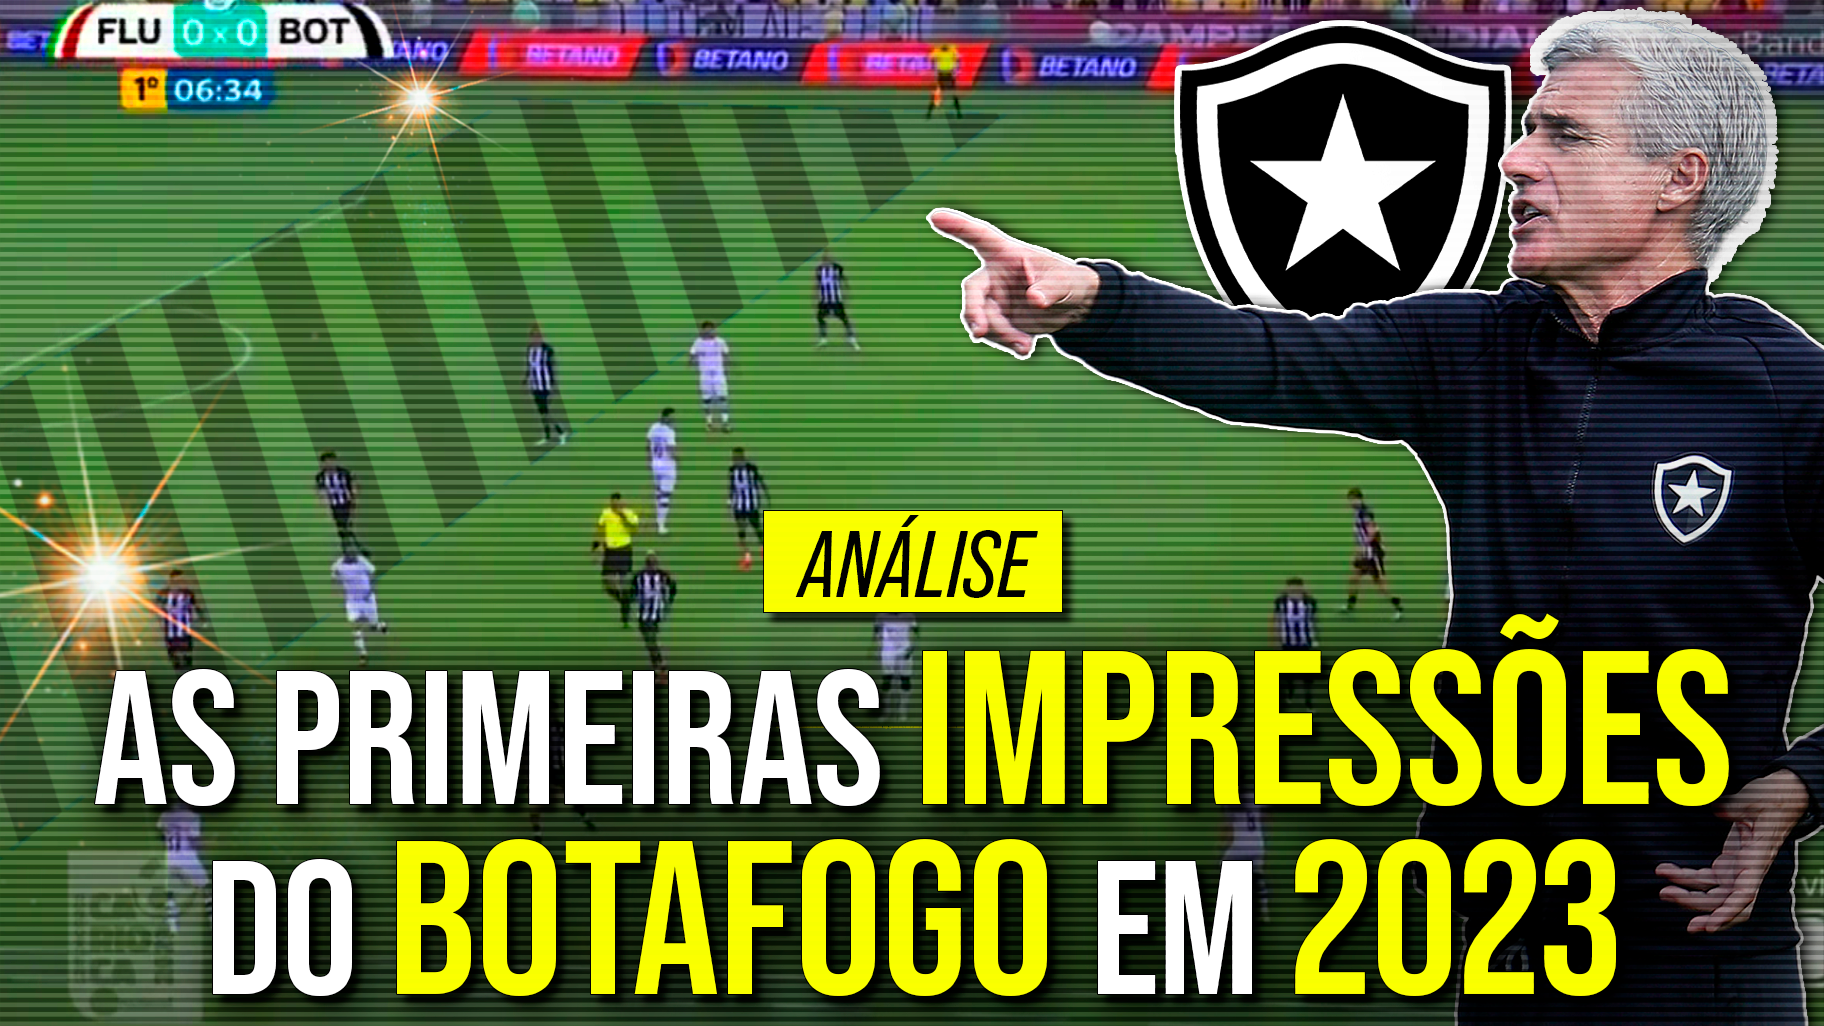 Os primeiros padrões táticos do Botafogo em 2023